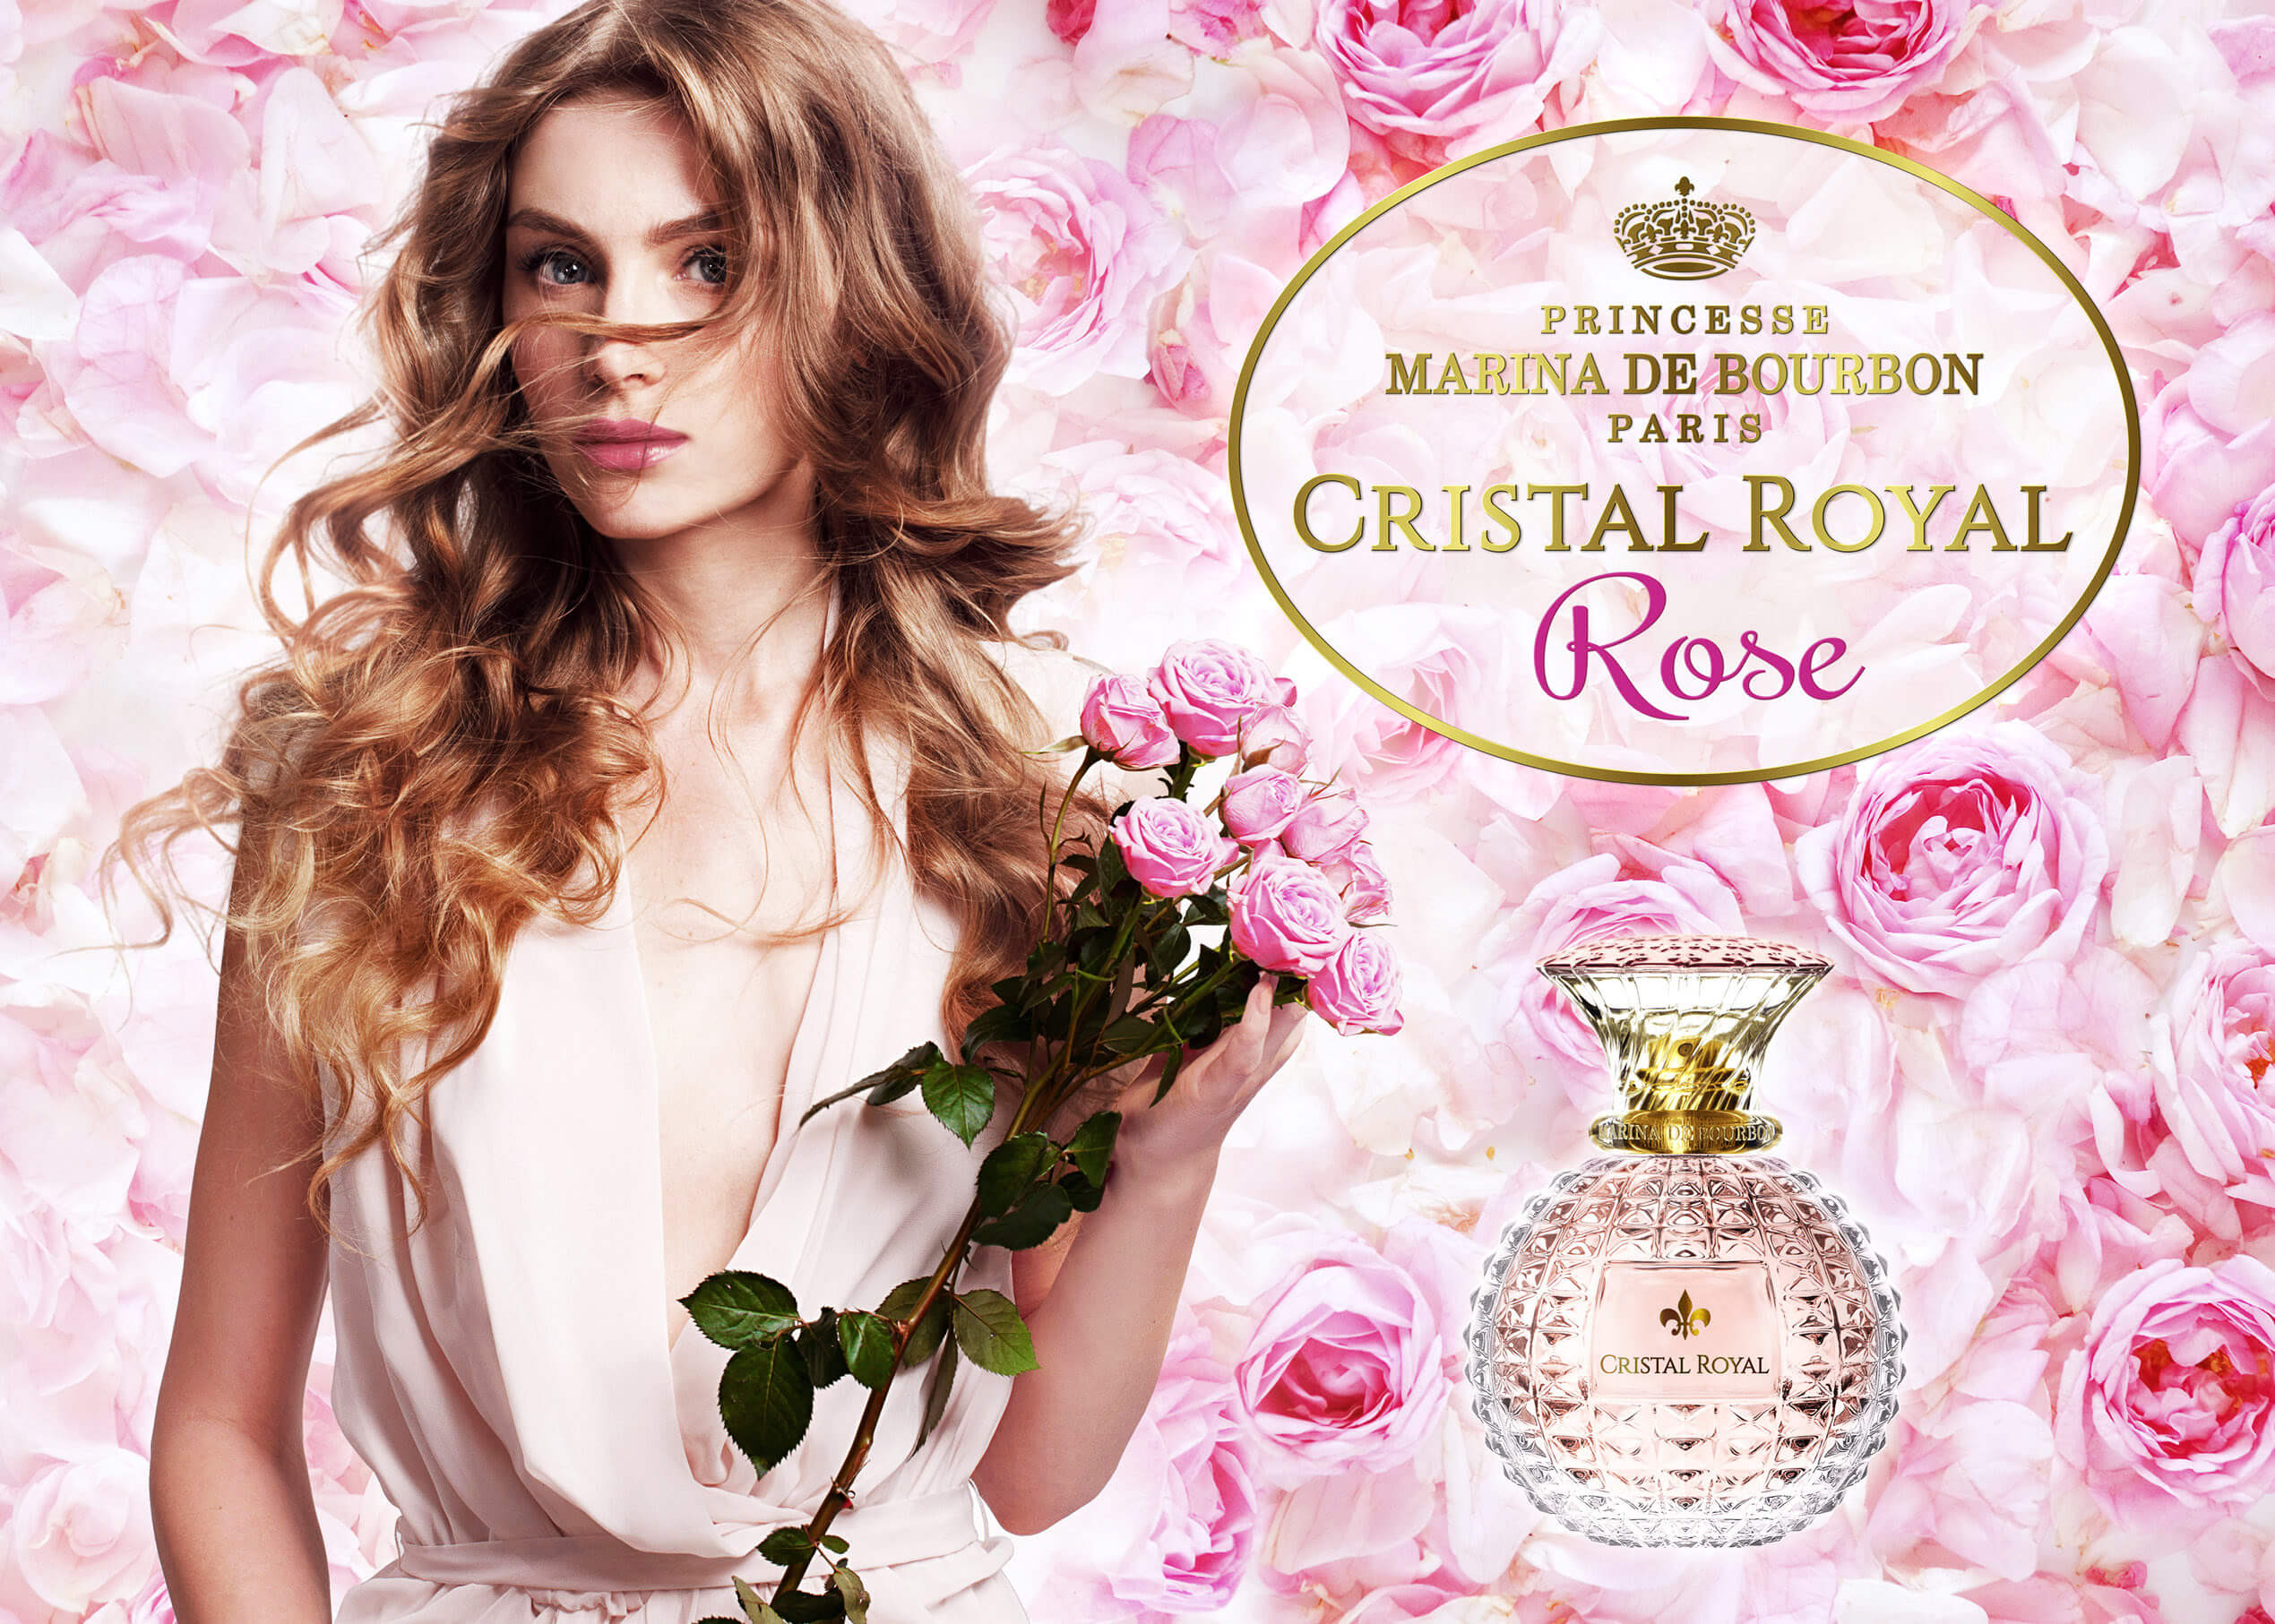 عطر زنانه پرینسس مارینا دو بوربون Cristal Royal Rose حجم 50میلی لیتر